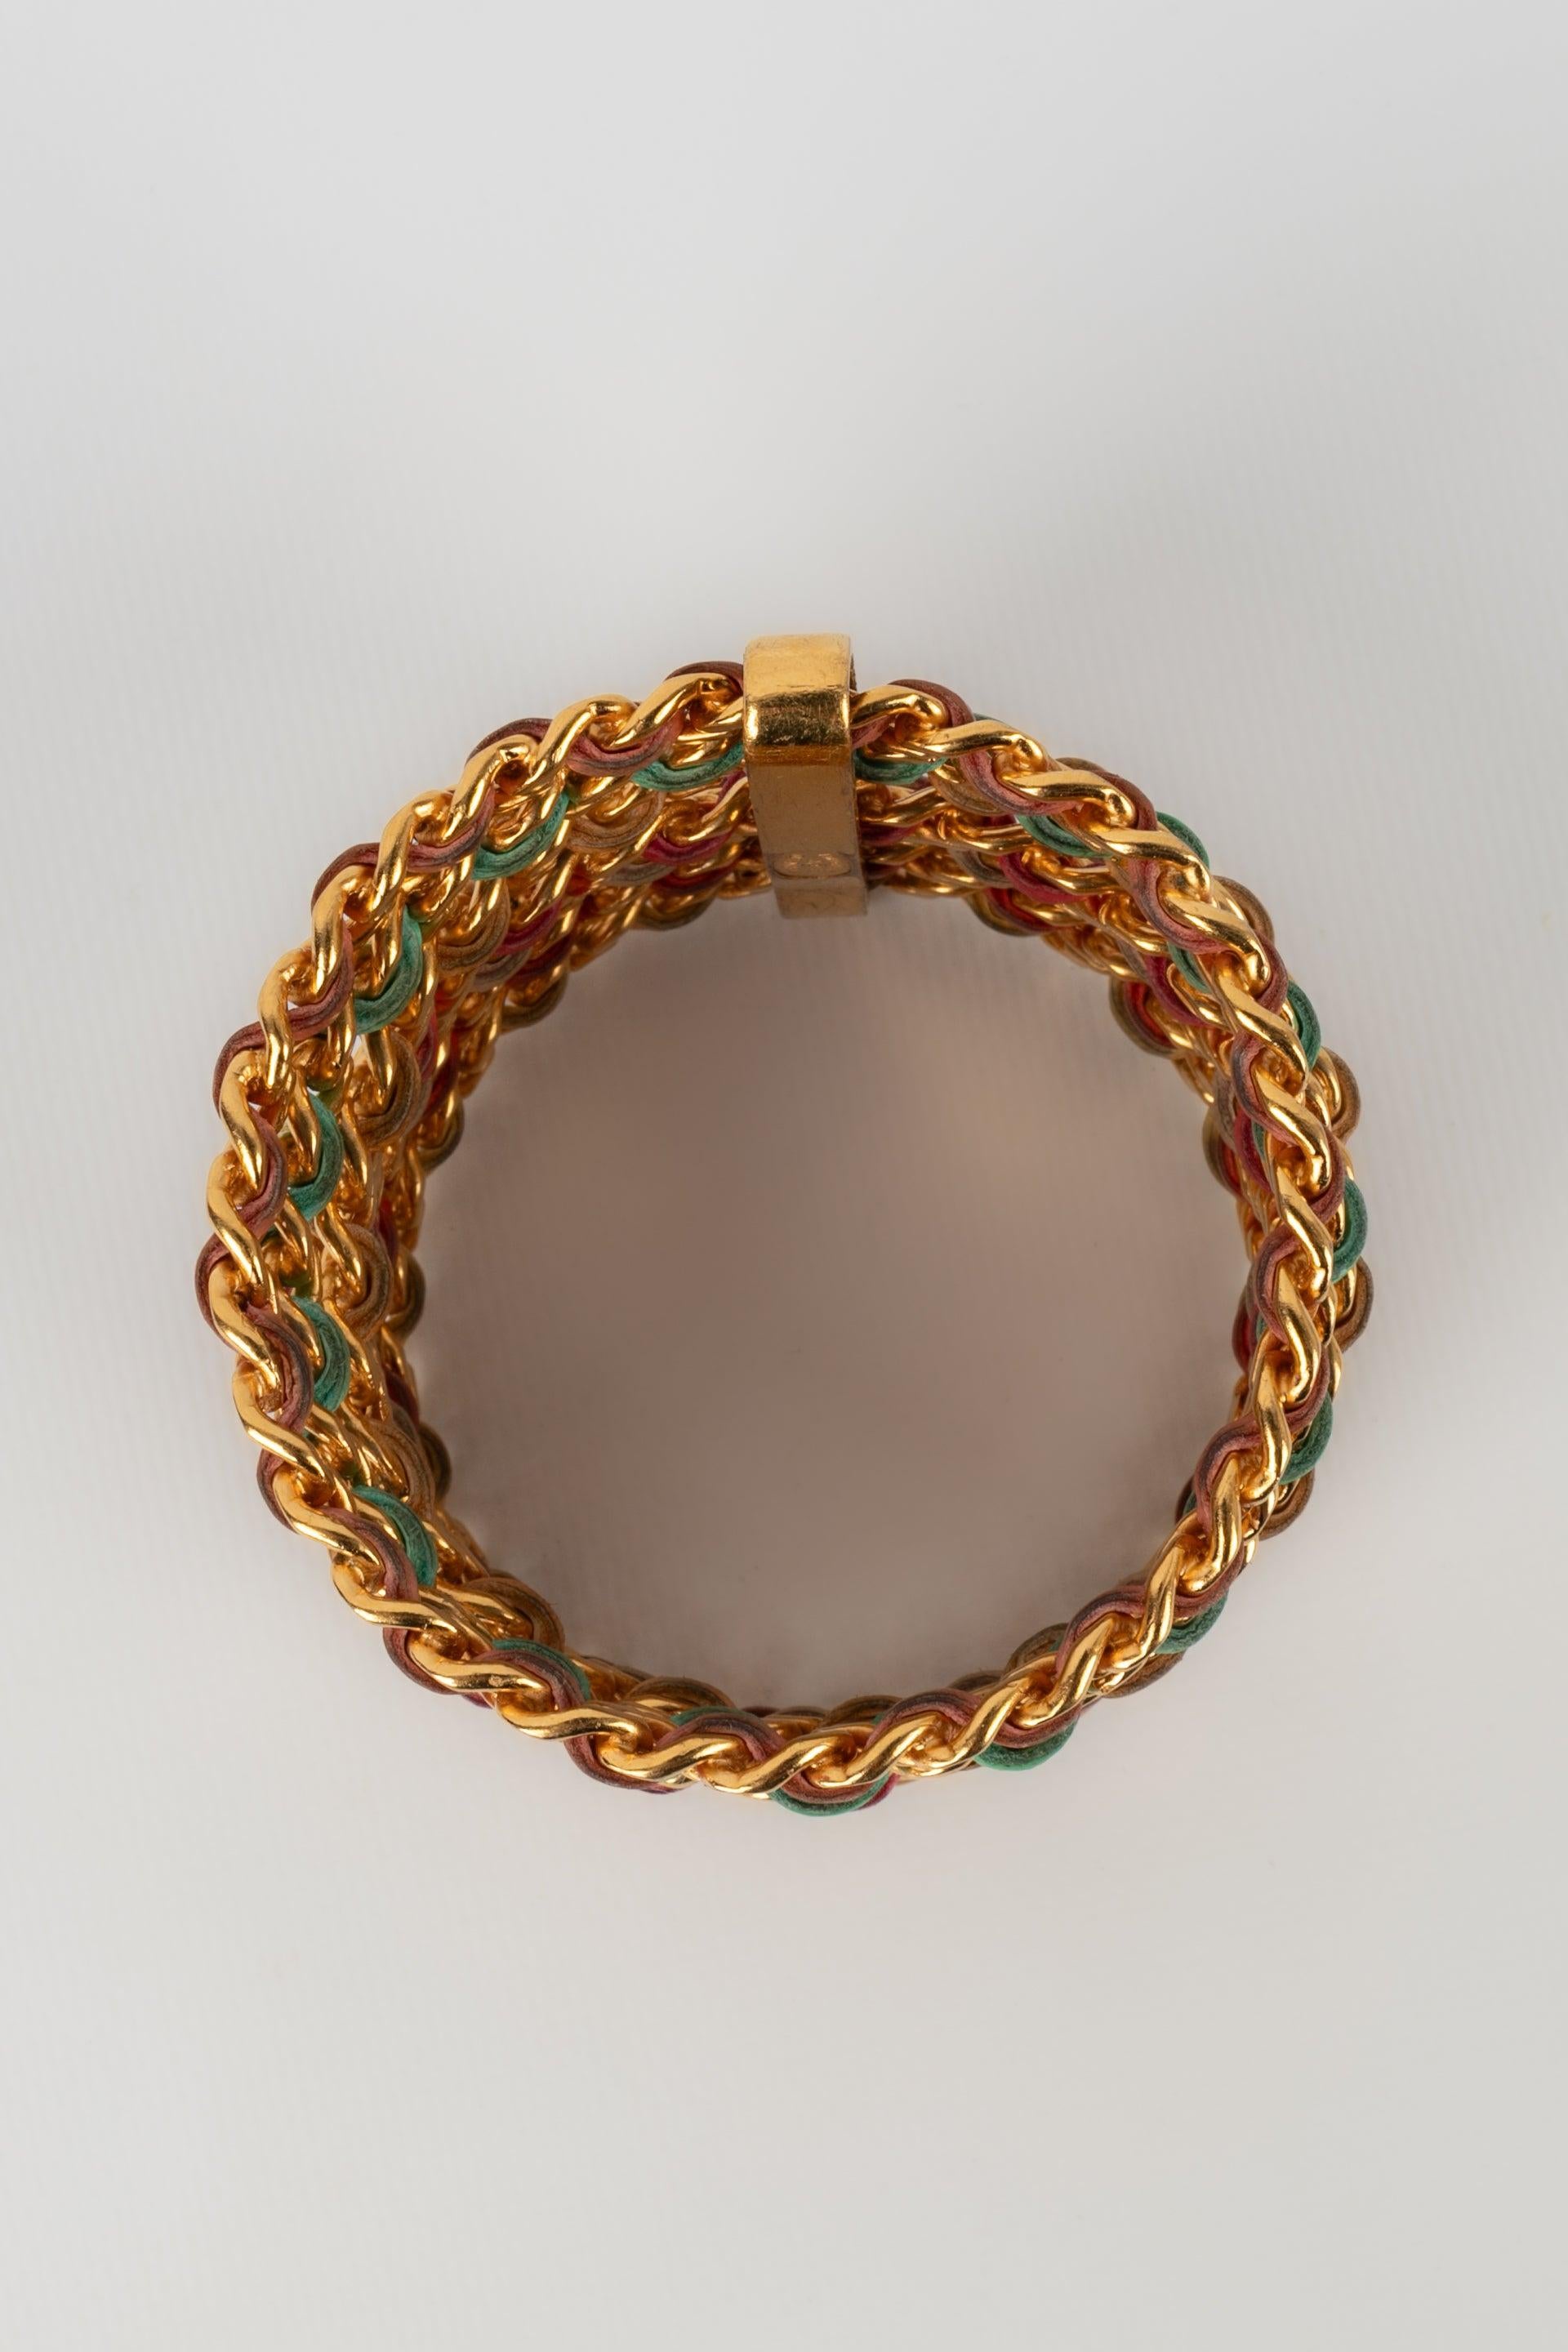 Chanel Cuff Bracelets Composed of Seven Golden Metal Bracelets, 1993 For Sale 4